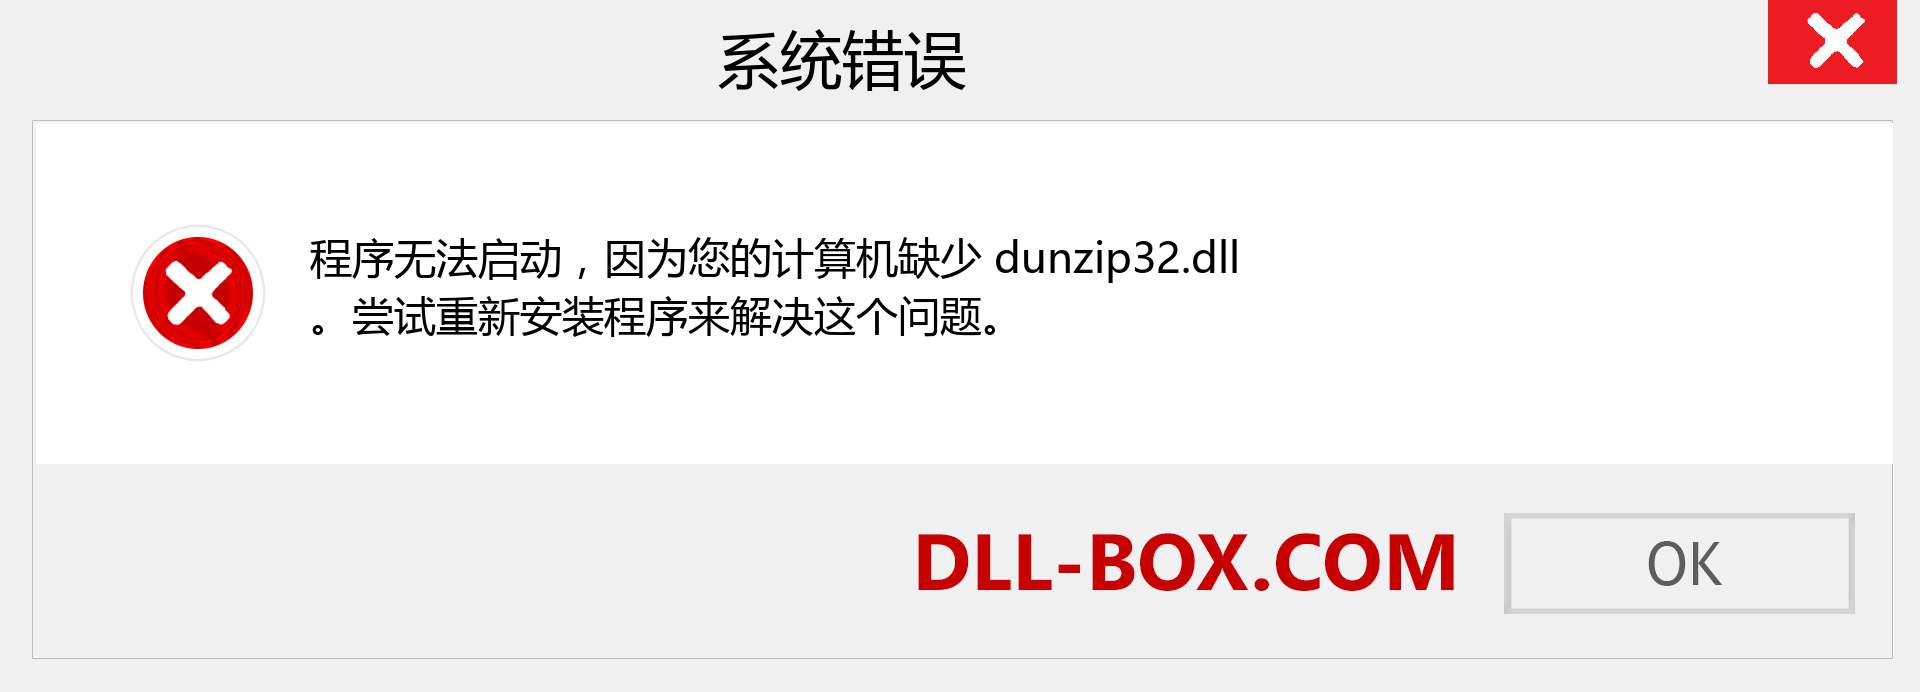 dunzip32.dll 文件丢失？。 适用于 Windows 7、8、10 的下载 - 修复 Windows、照片、图像上的 dunzip32 dll 丢失错误